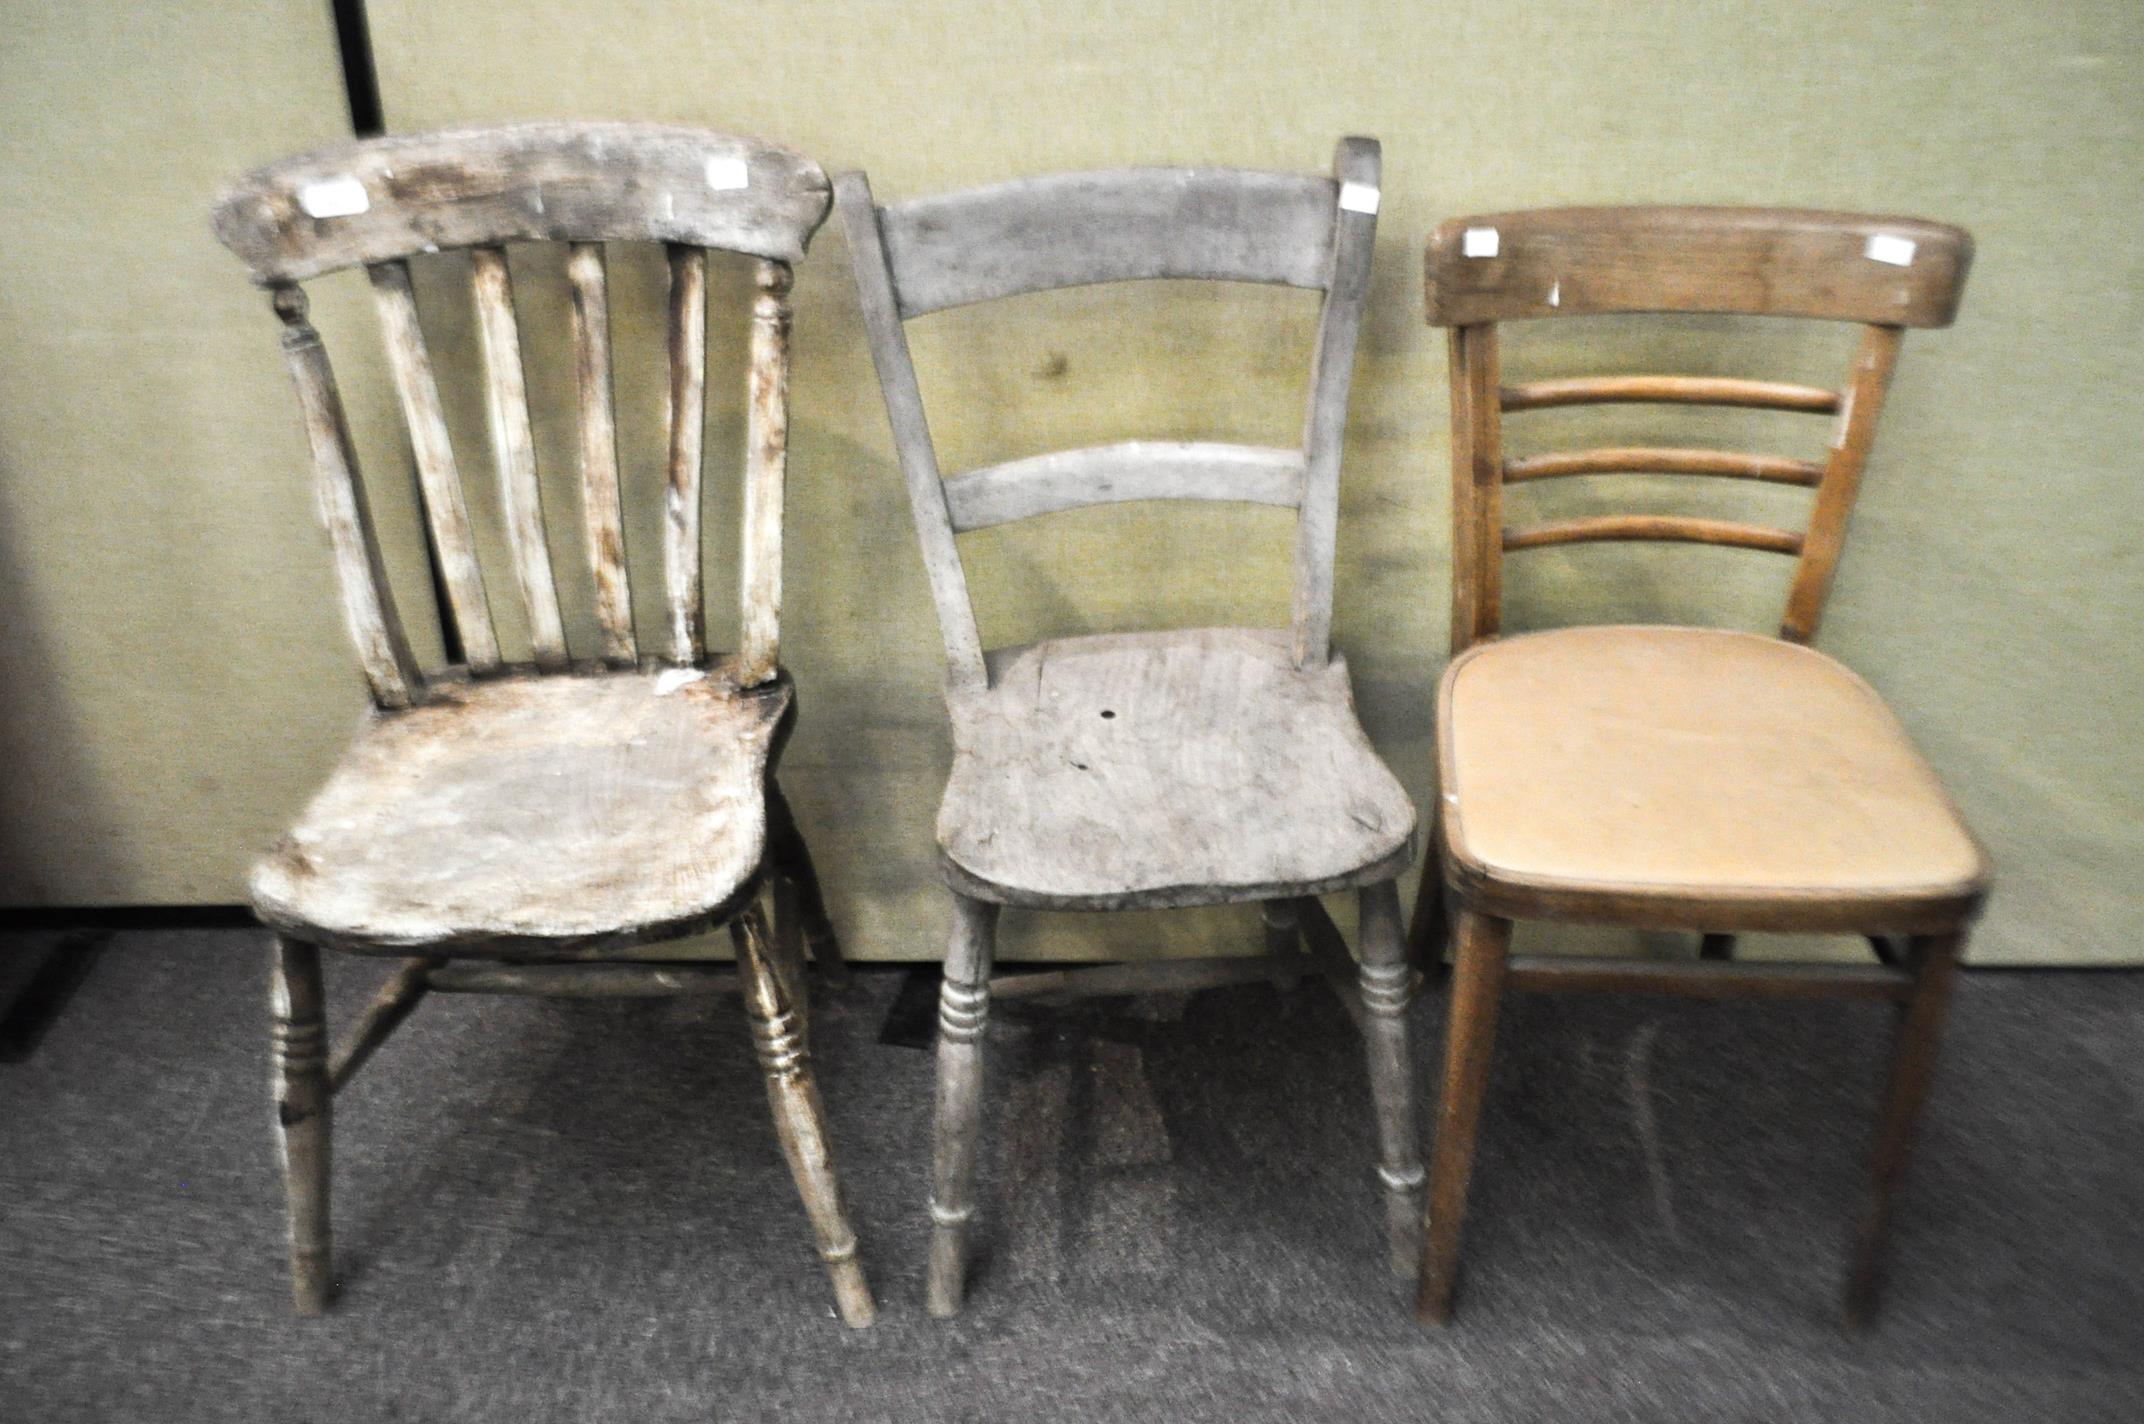 Three kitchen chairs